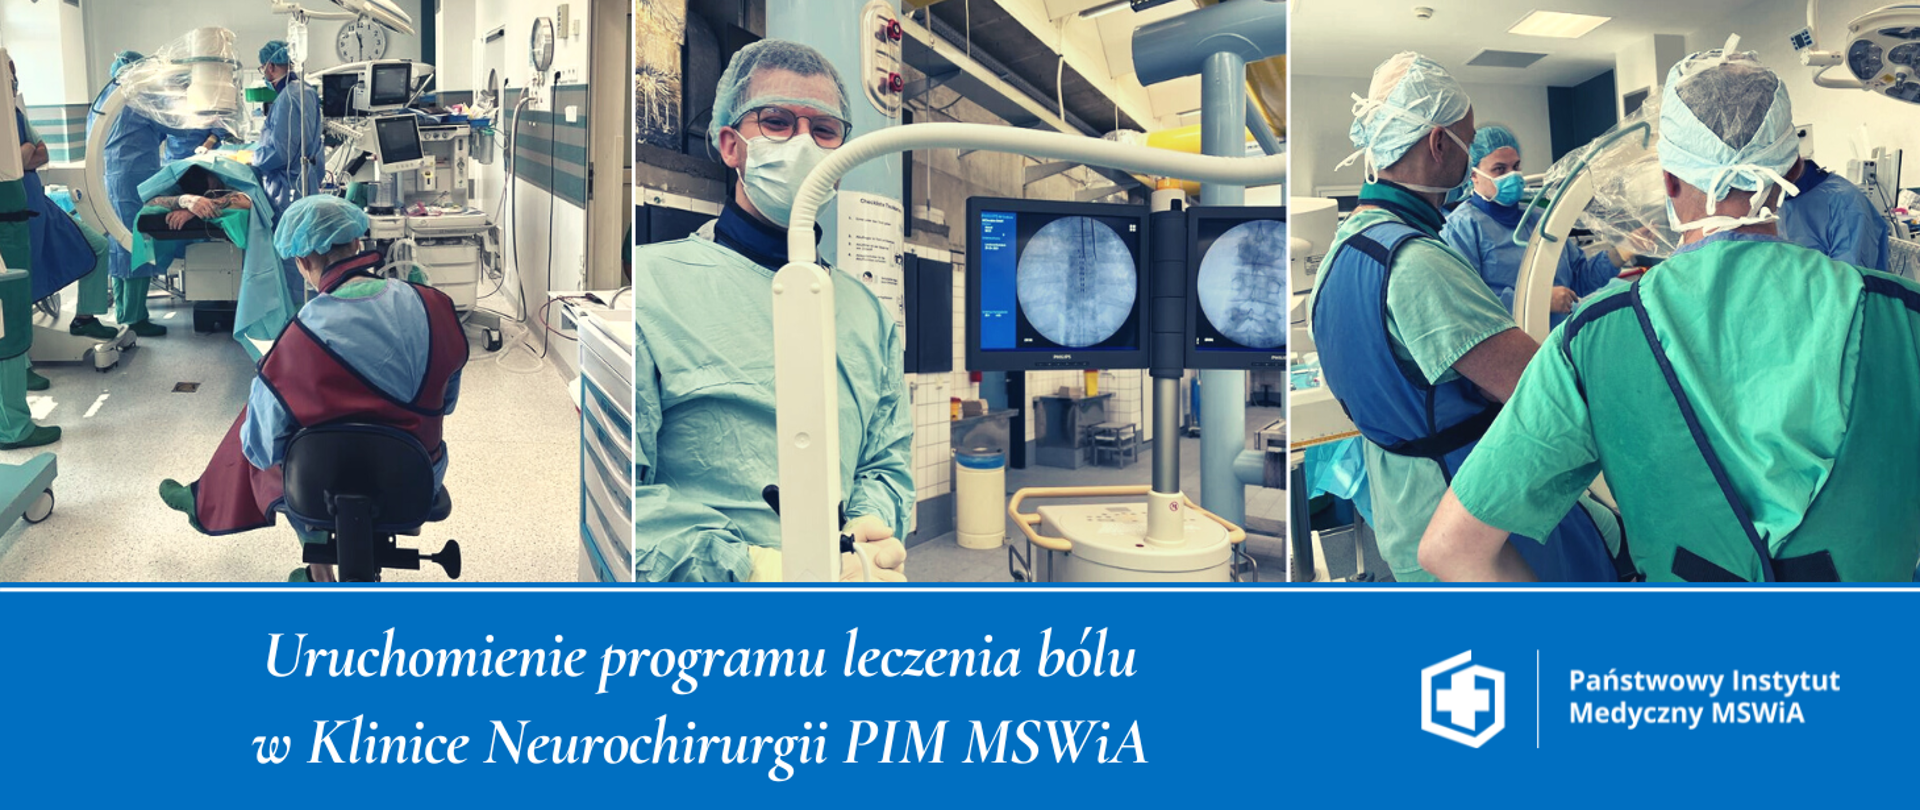 Uruchomienie programu leczenia bólu w Klinice Neurochirurgii PIM MSWiA